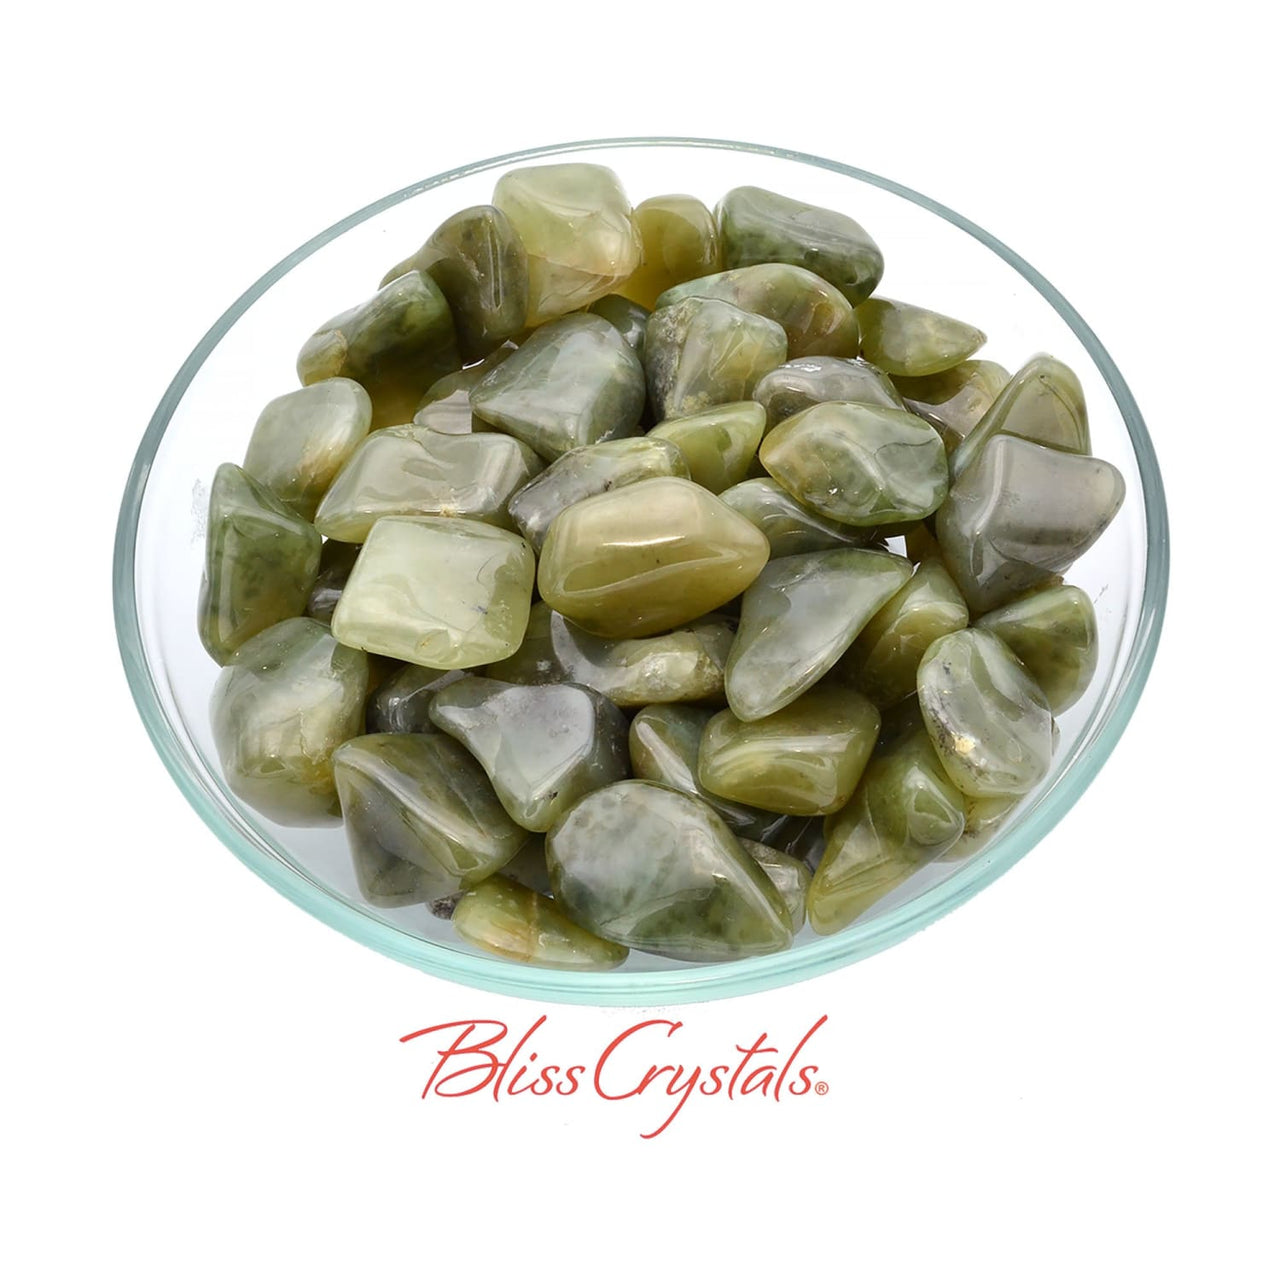 1 GROSSULARITE Olive Tumbled Stone aka Green Garnet Healing 